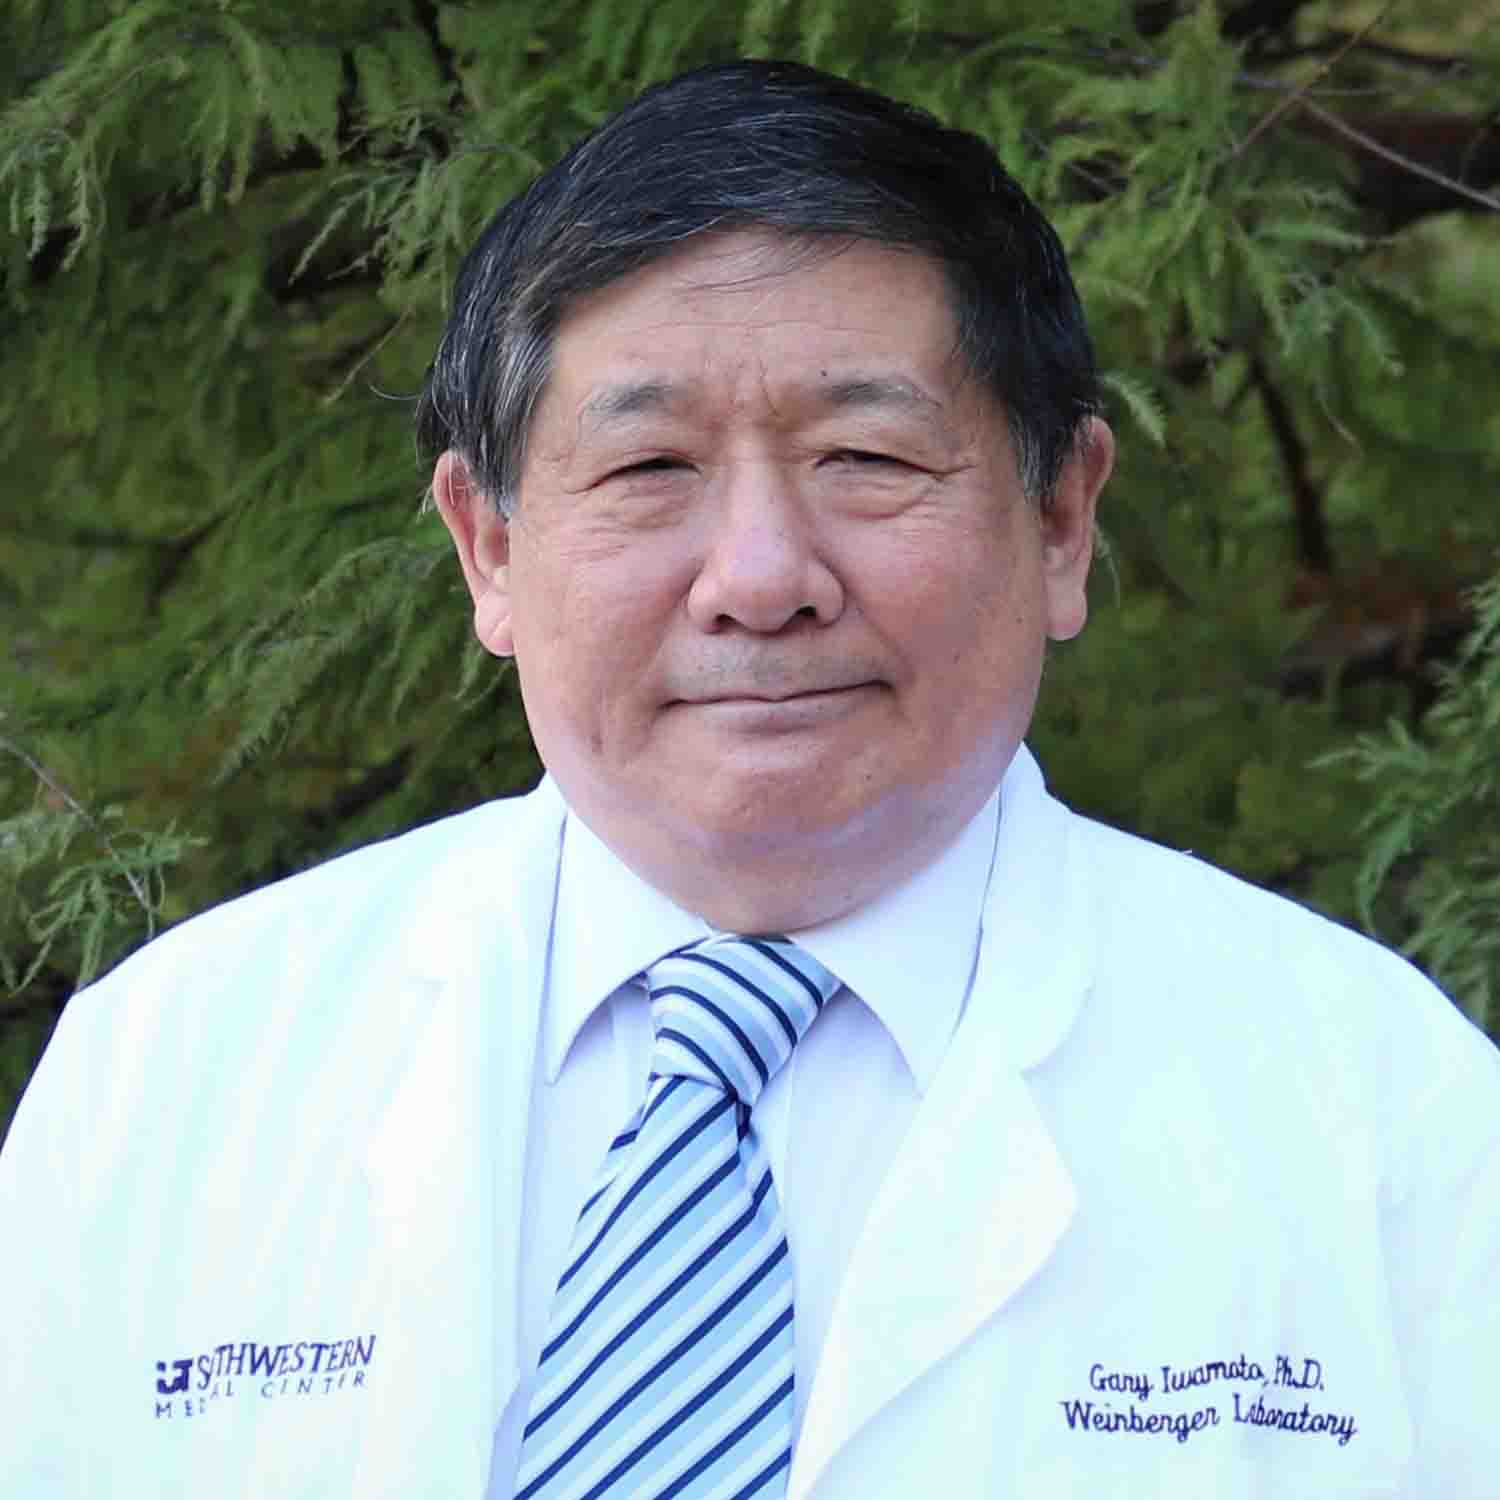 Gary Iwamoto, Ph.D.